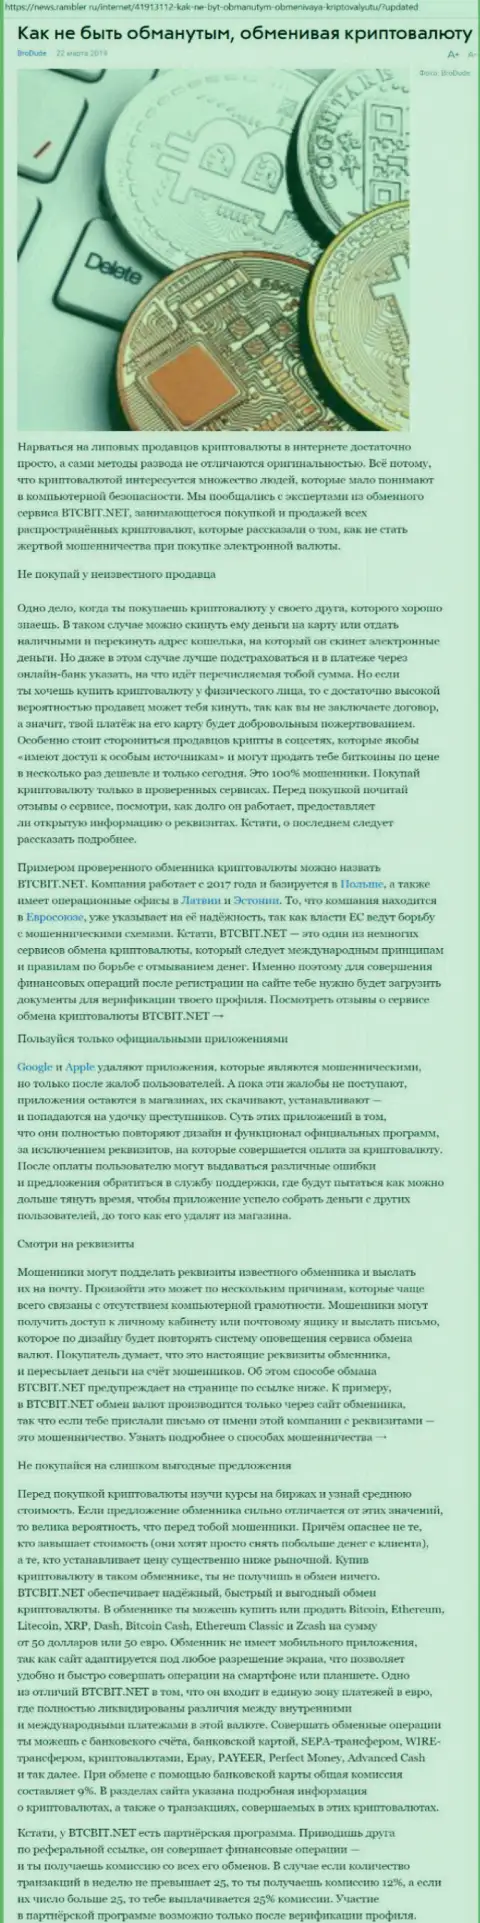 Статья о компании BTC Bit на news rambler ru